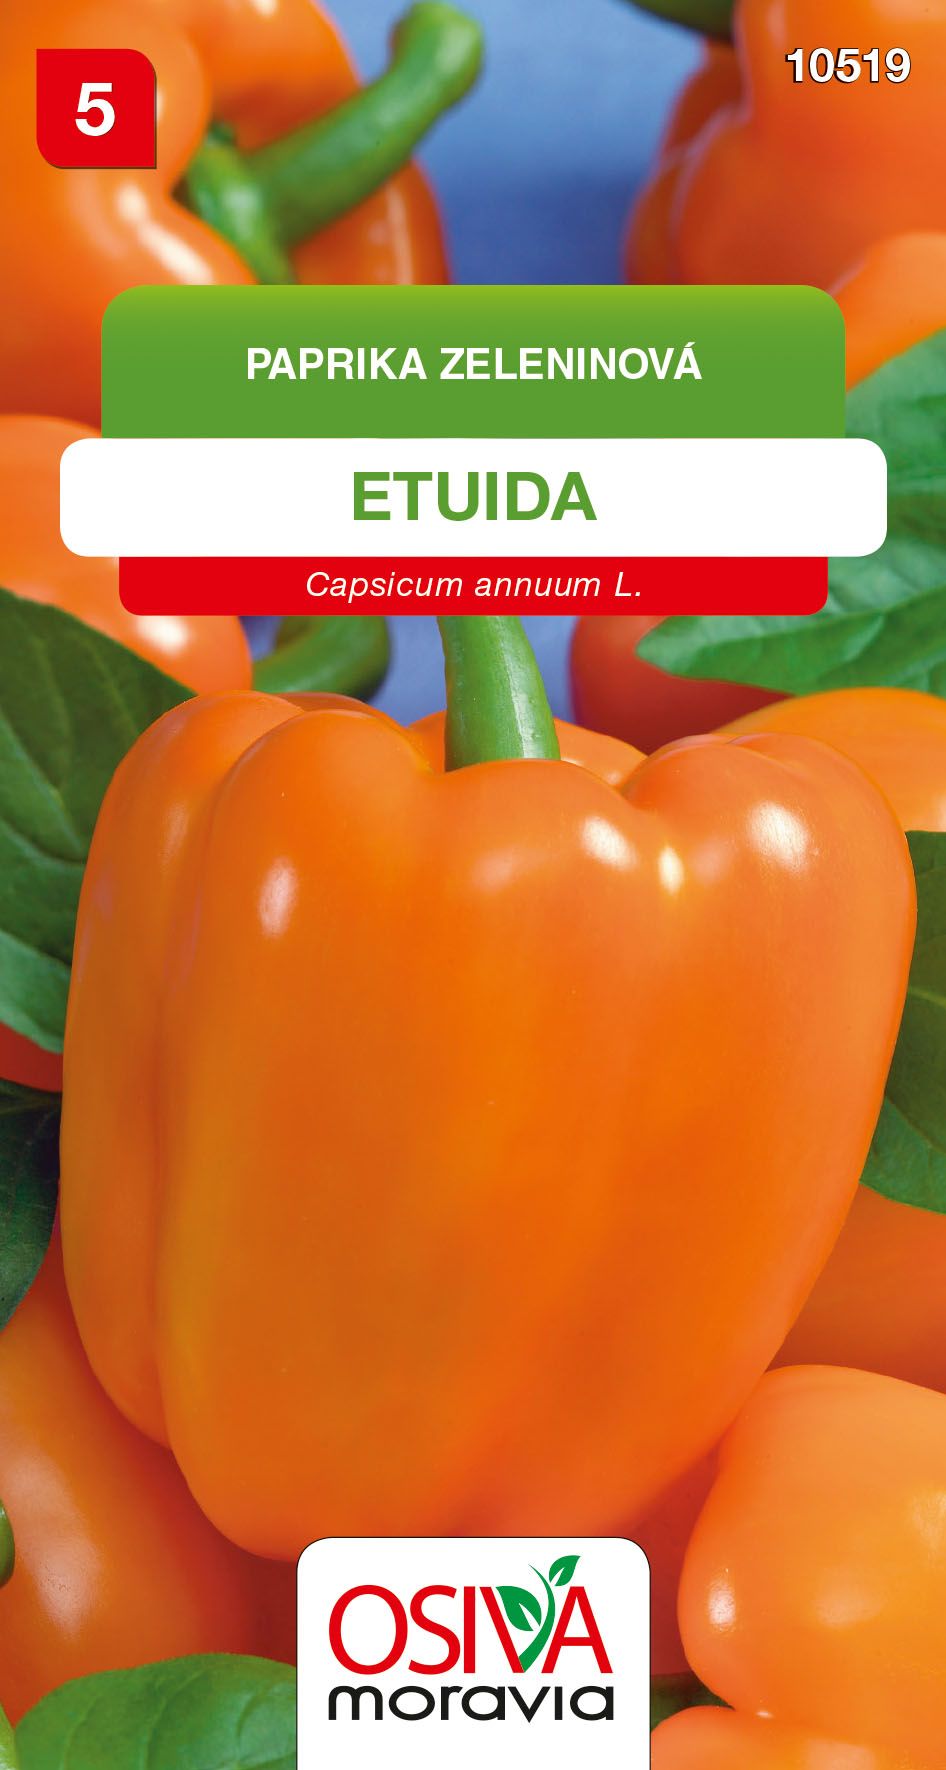 Paprika zeleninová - sladká - Etuida